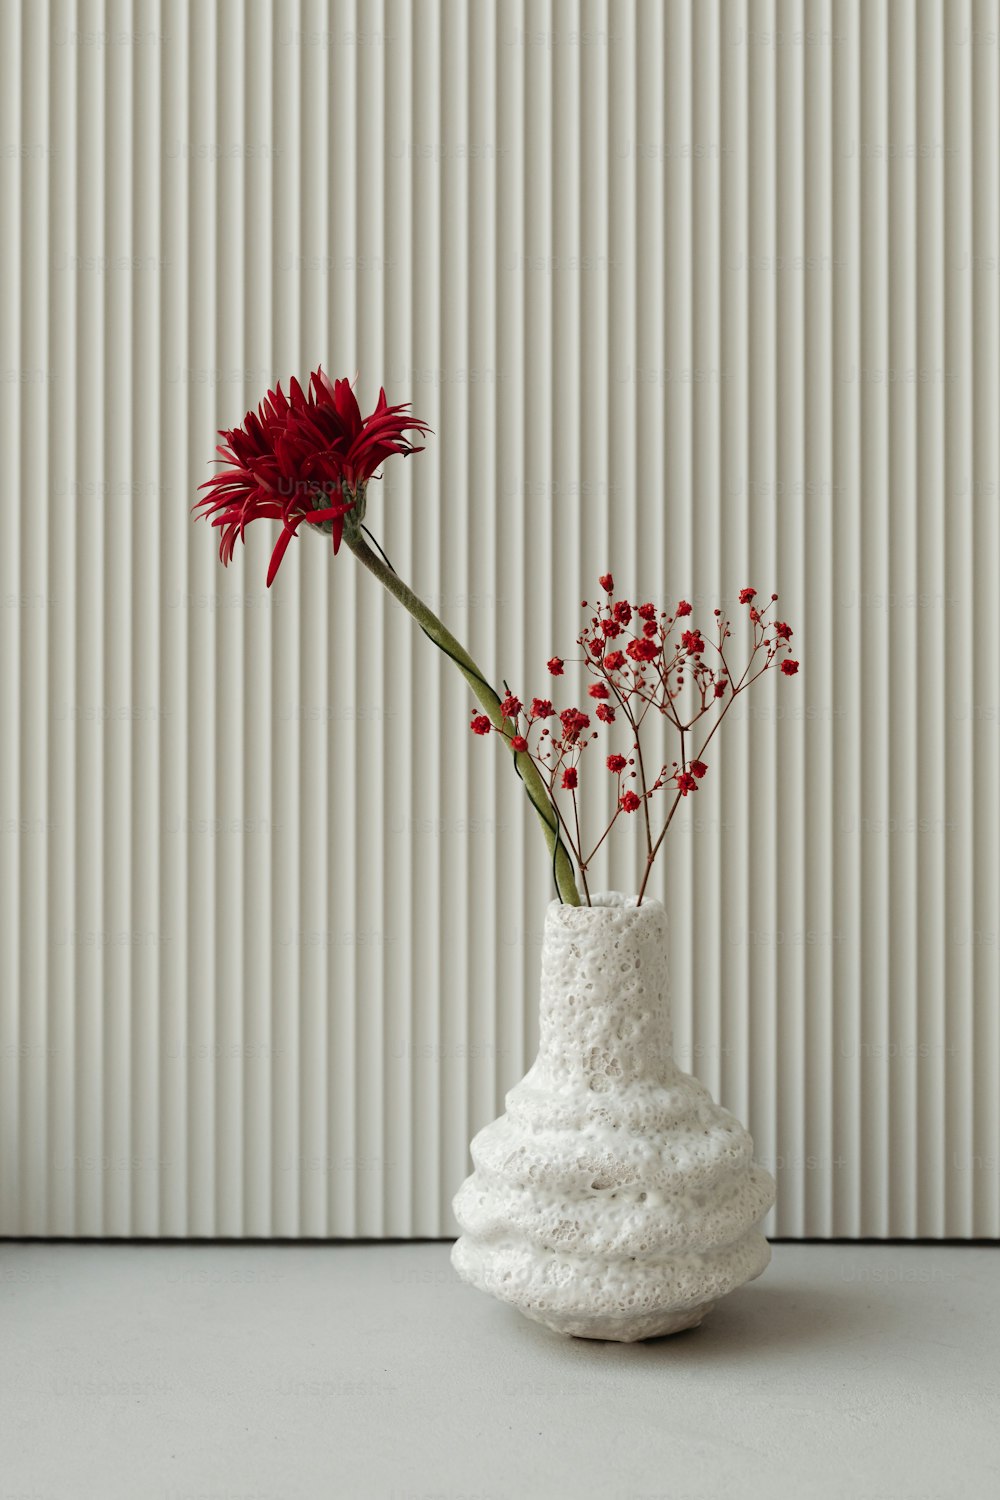 um vaso branco com uma flor vermelha nele